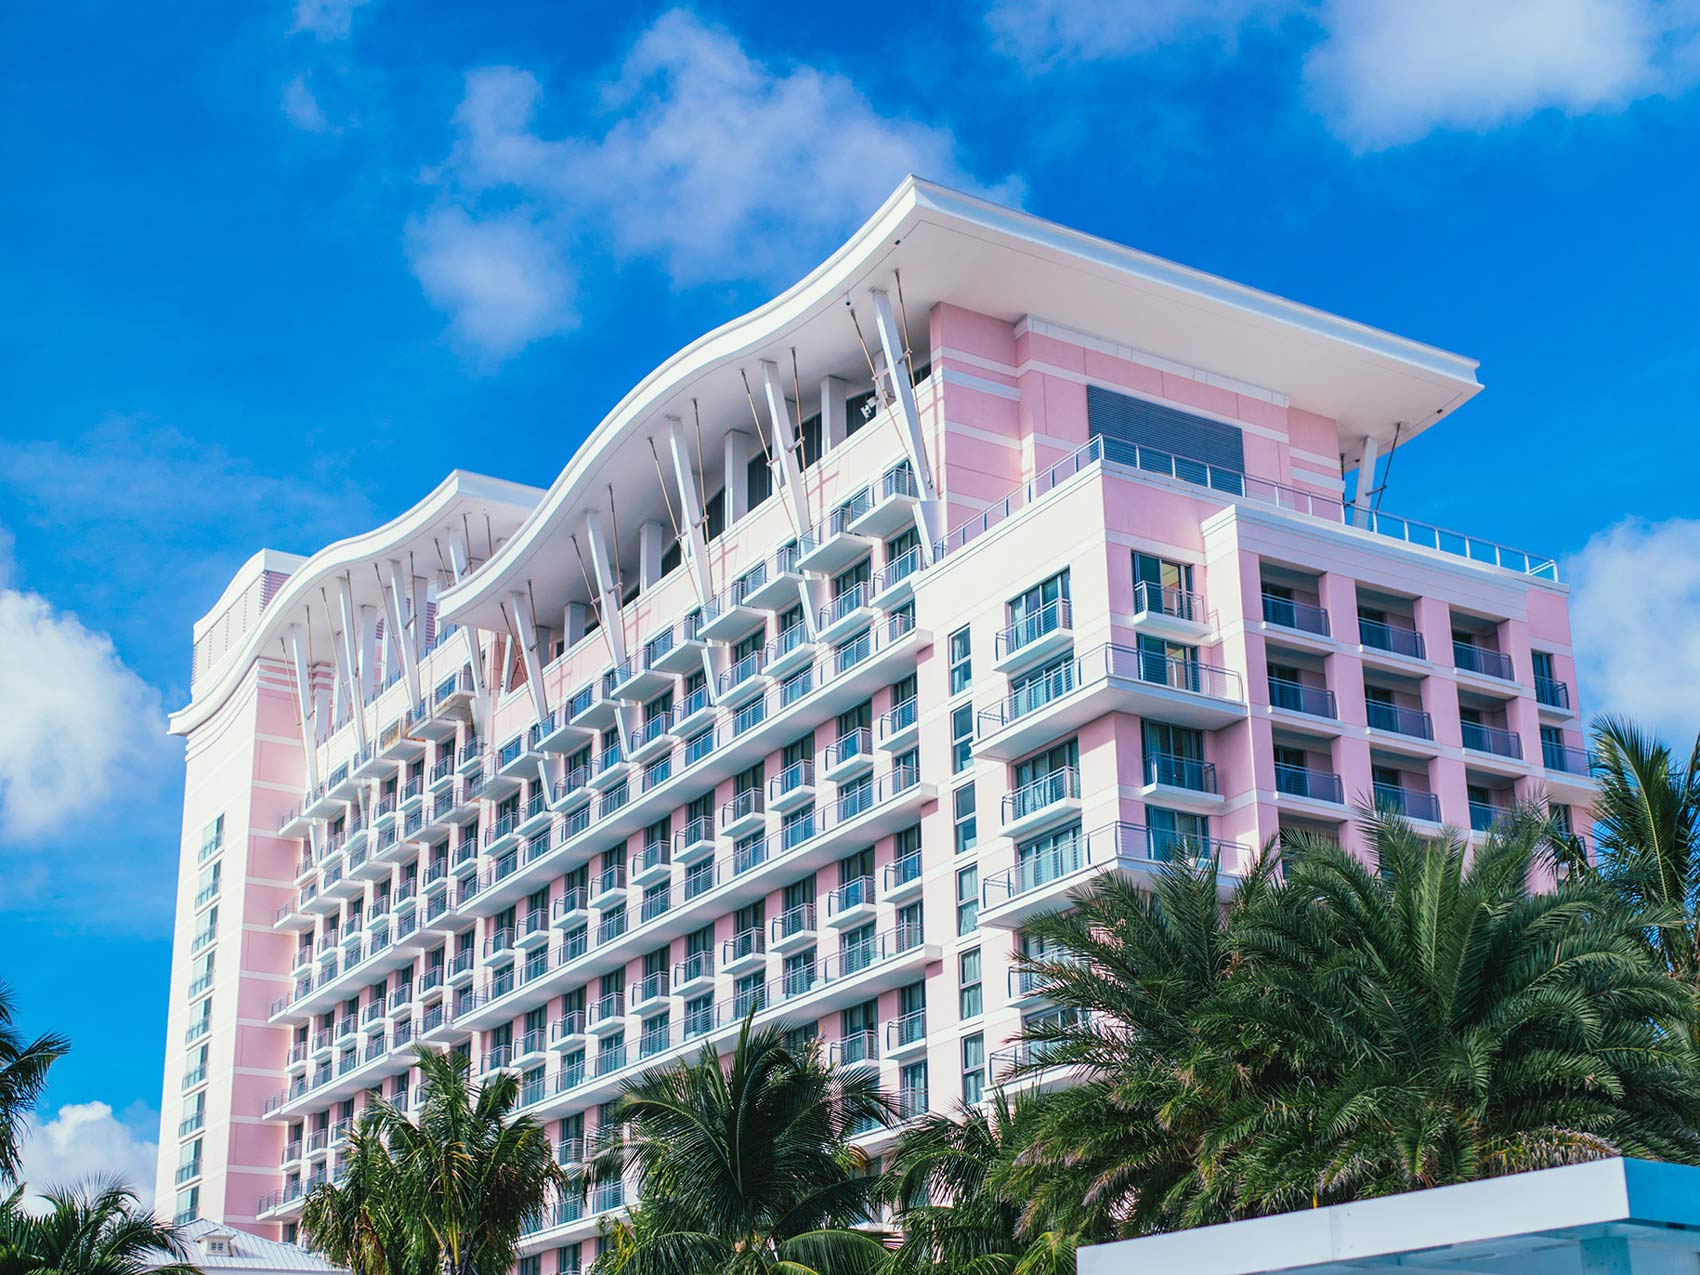 Exterior de un edificio rosa, el hotel SLS Baha Mar, con el cielo azul de fondo.